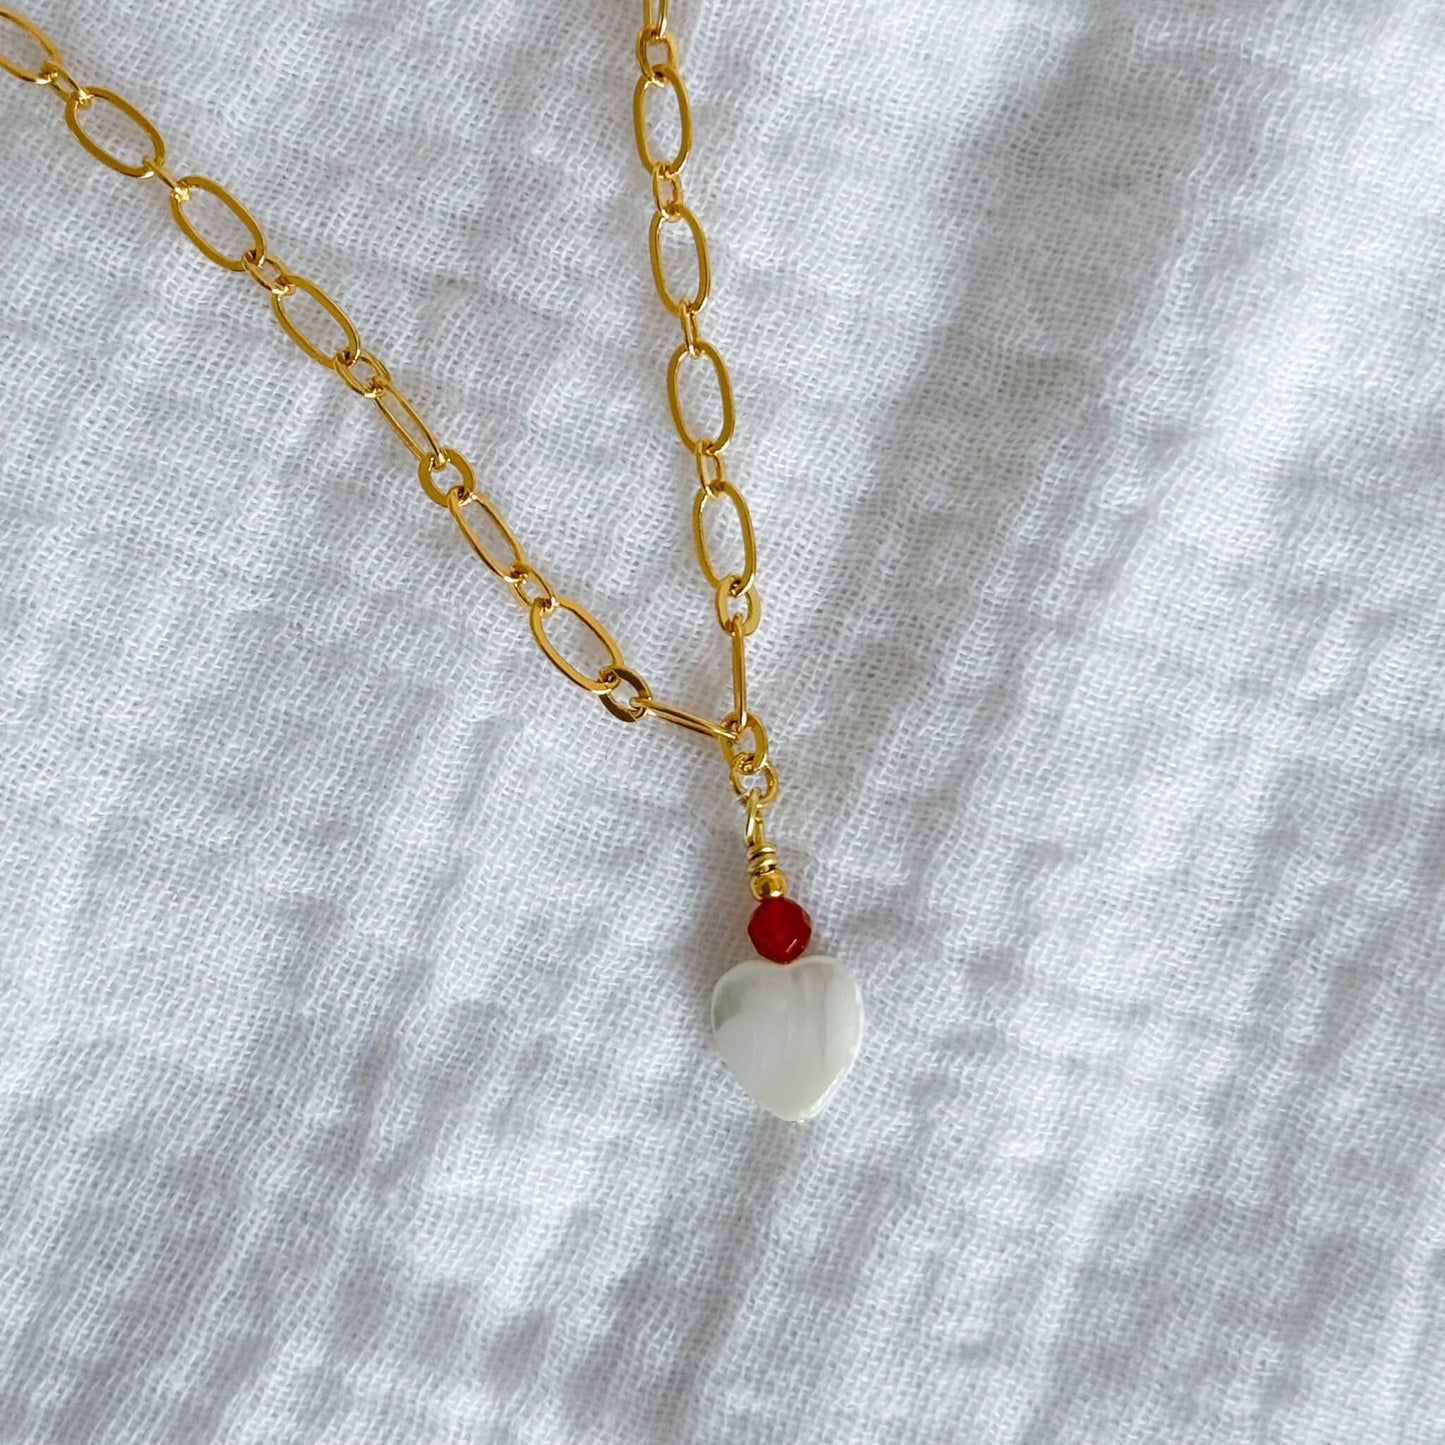  Collier Valentine avec coeur en nacre, perle de cornaline sur une chaine en plaqué or 